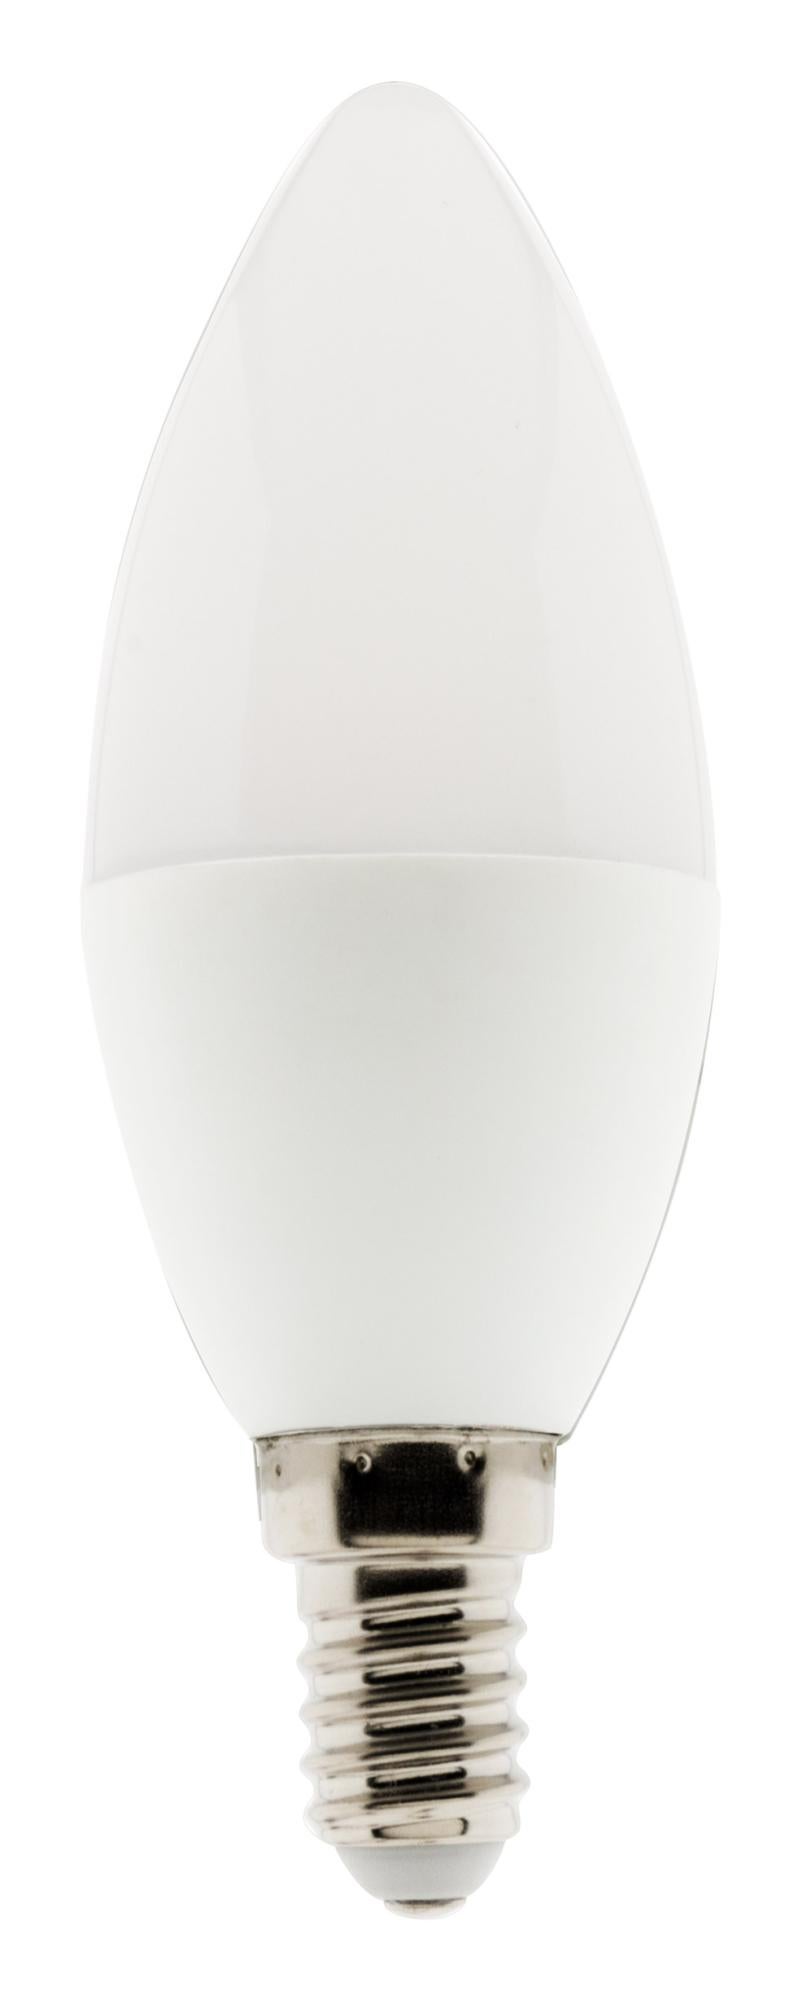 6 x Müller-Lumière DEL lignes Lampe 5 W ~ 35 W s14d Opal Blanc Chaud 2700k 30 cm Ra > 90 